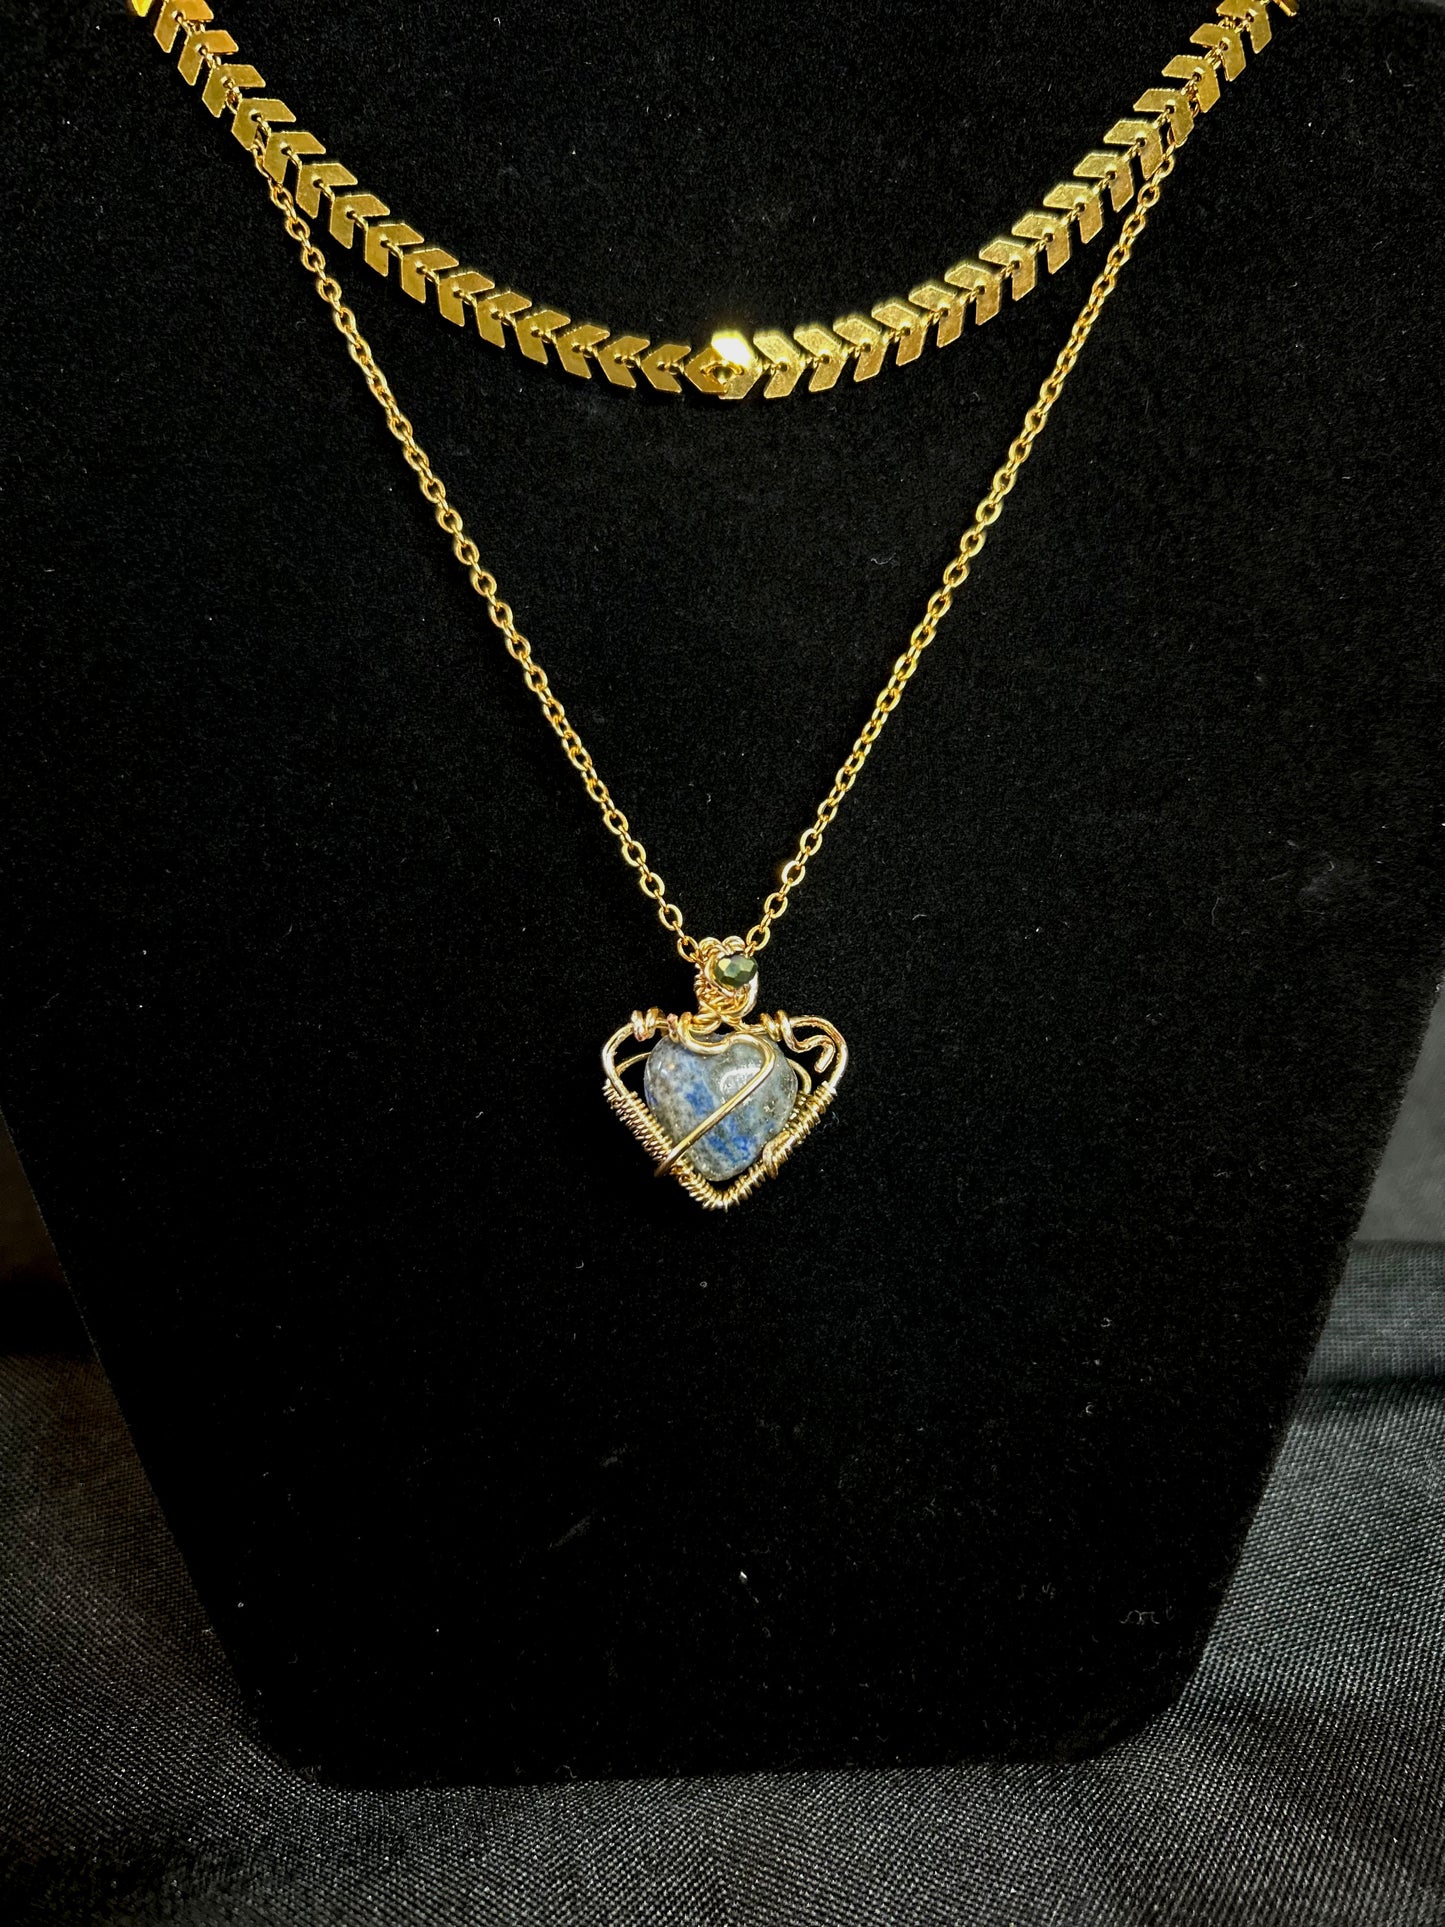 Raja Lapis Lazuli Layered Necklace